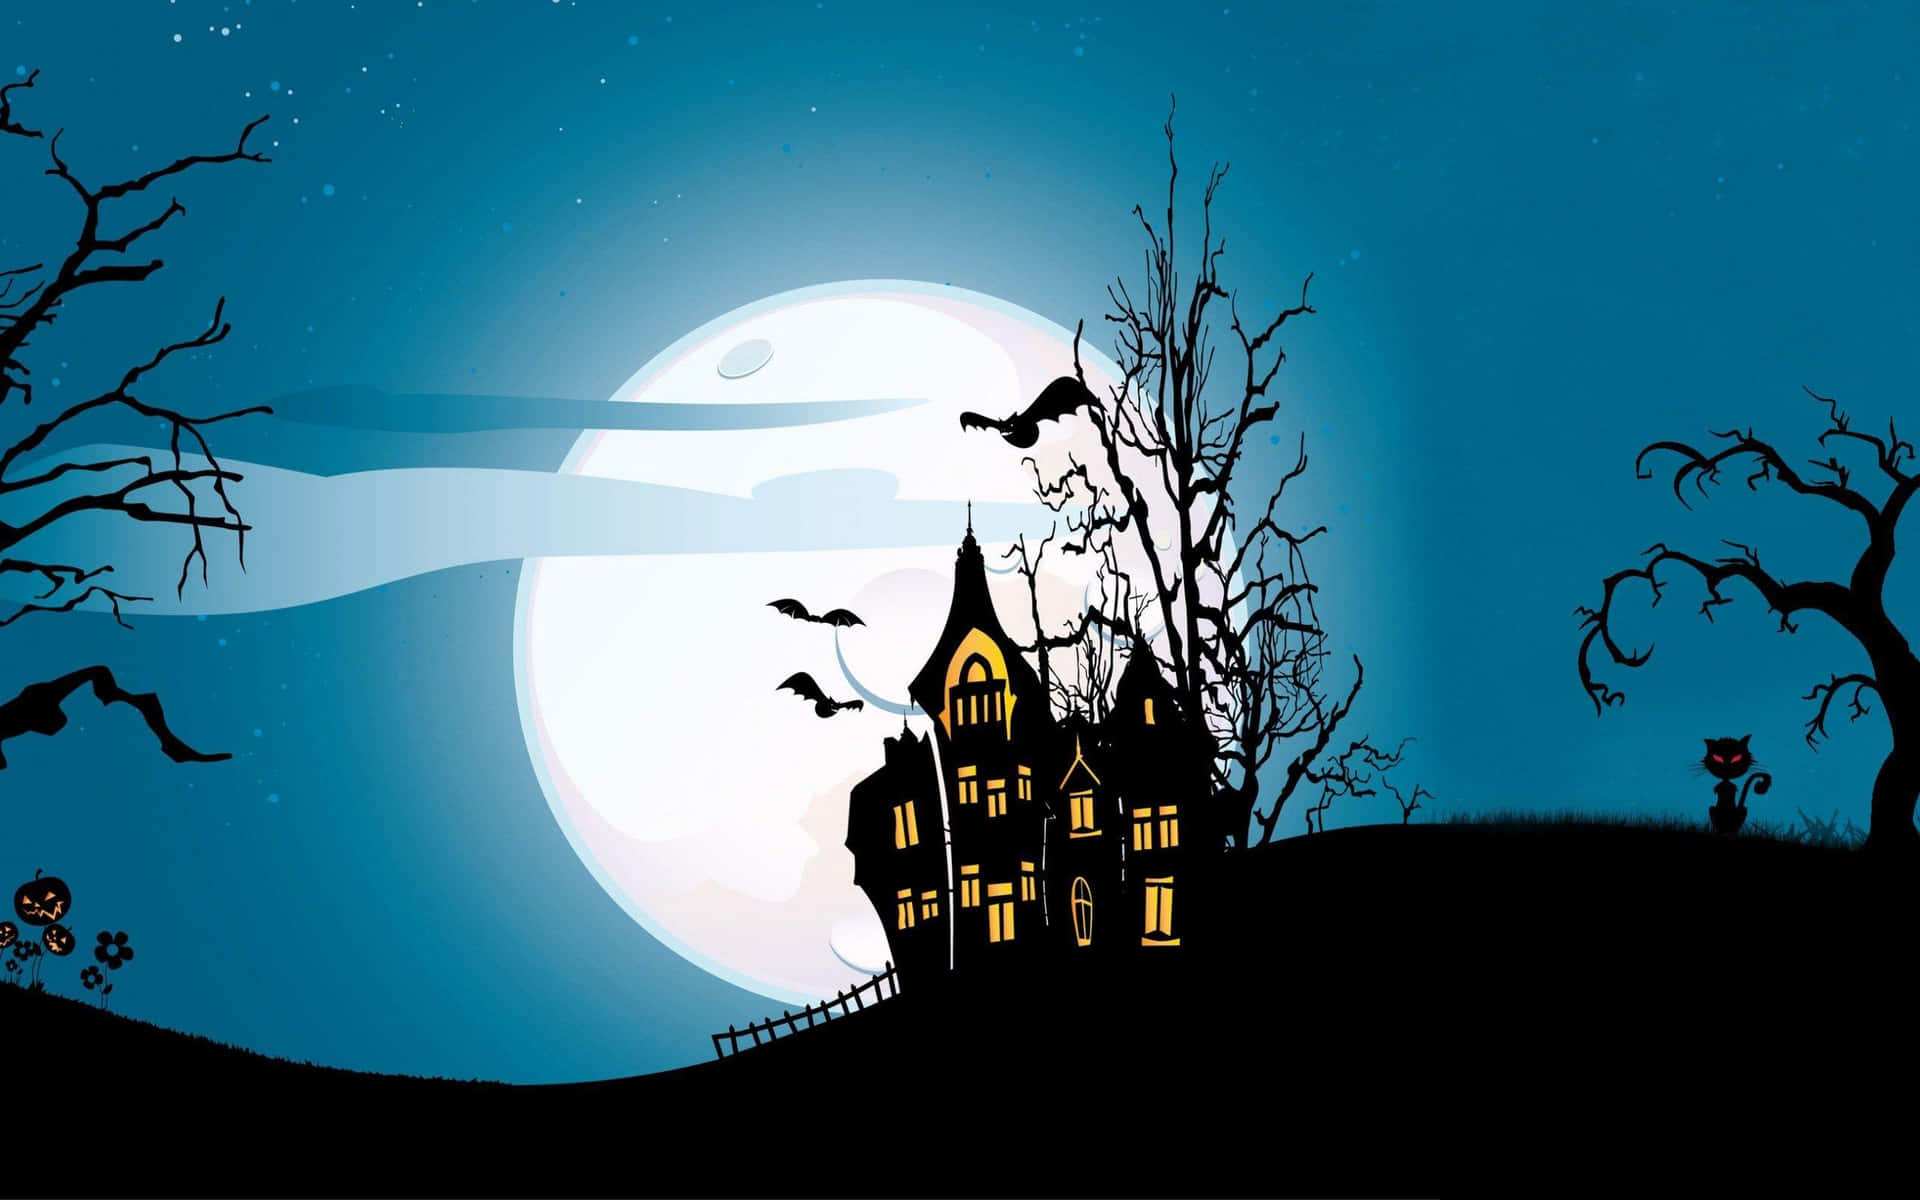 Imagende Una Casa Encantada De Halloween Con Un Dibujo Animado Y Una Luna Llena.